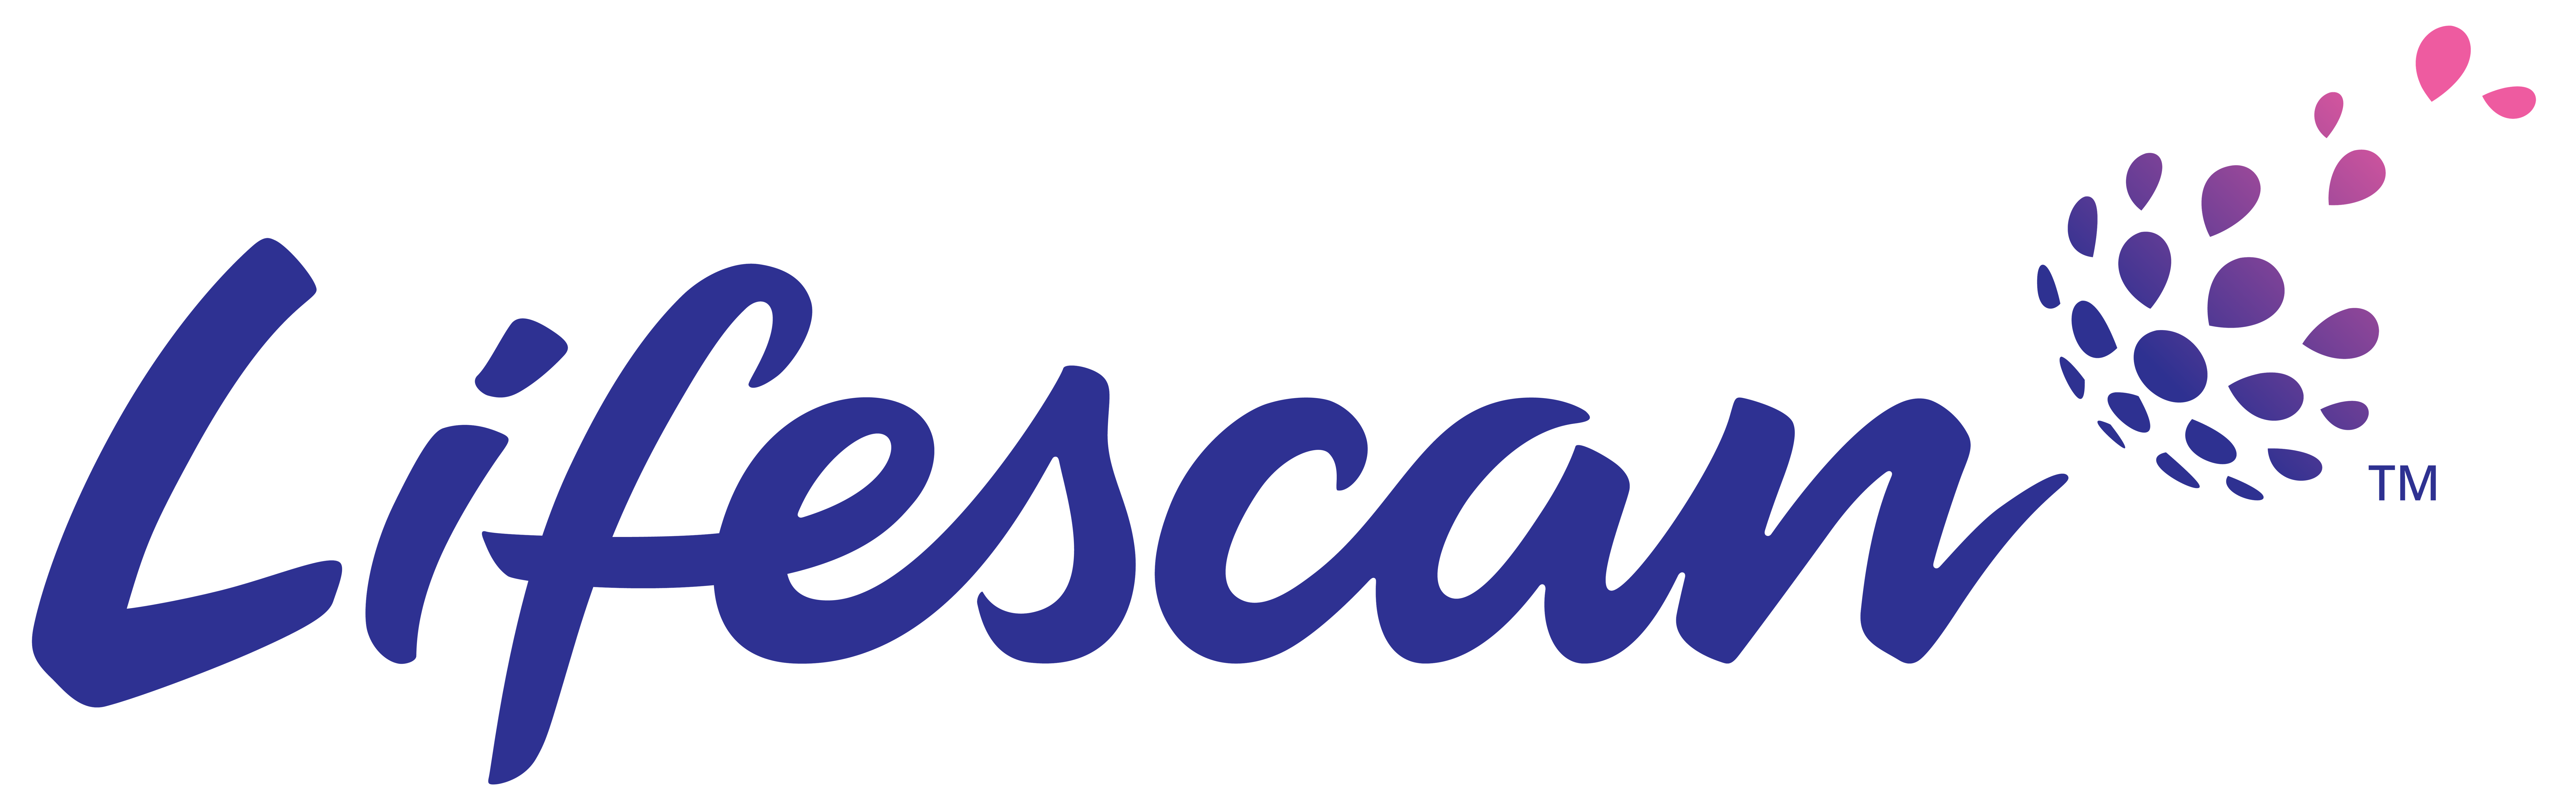 Lifescan Europe GmbH